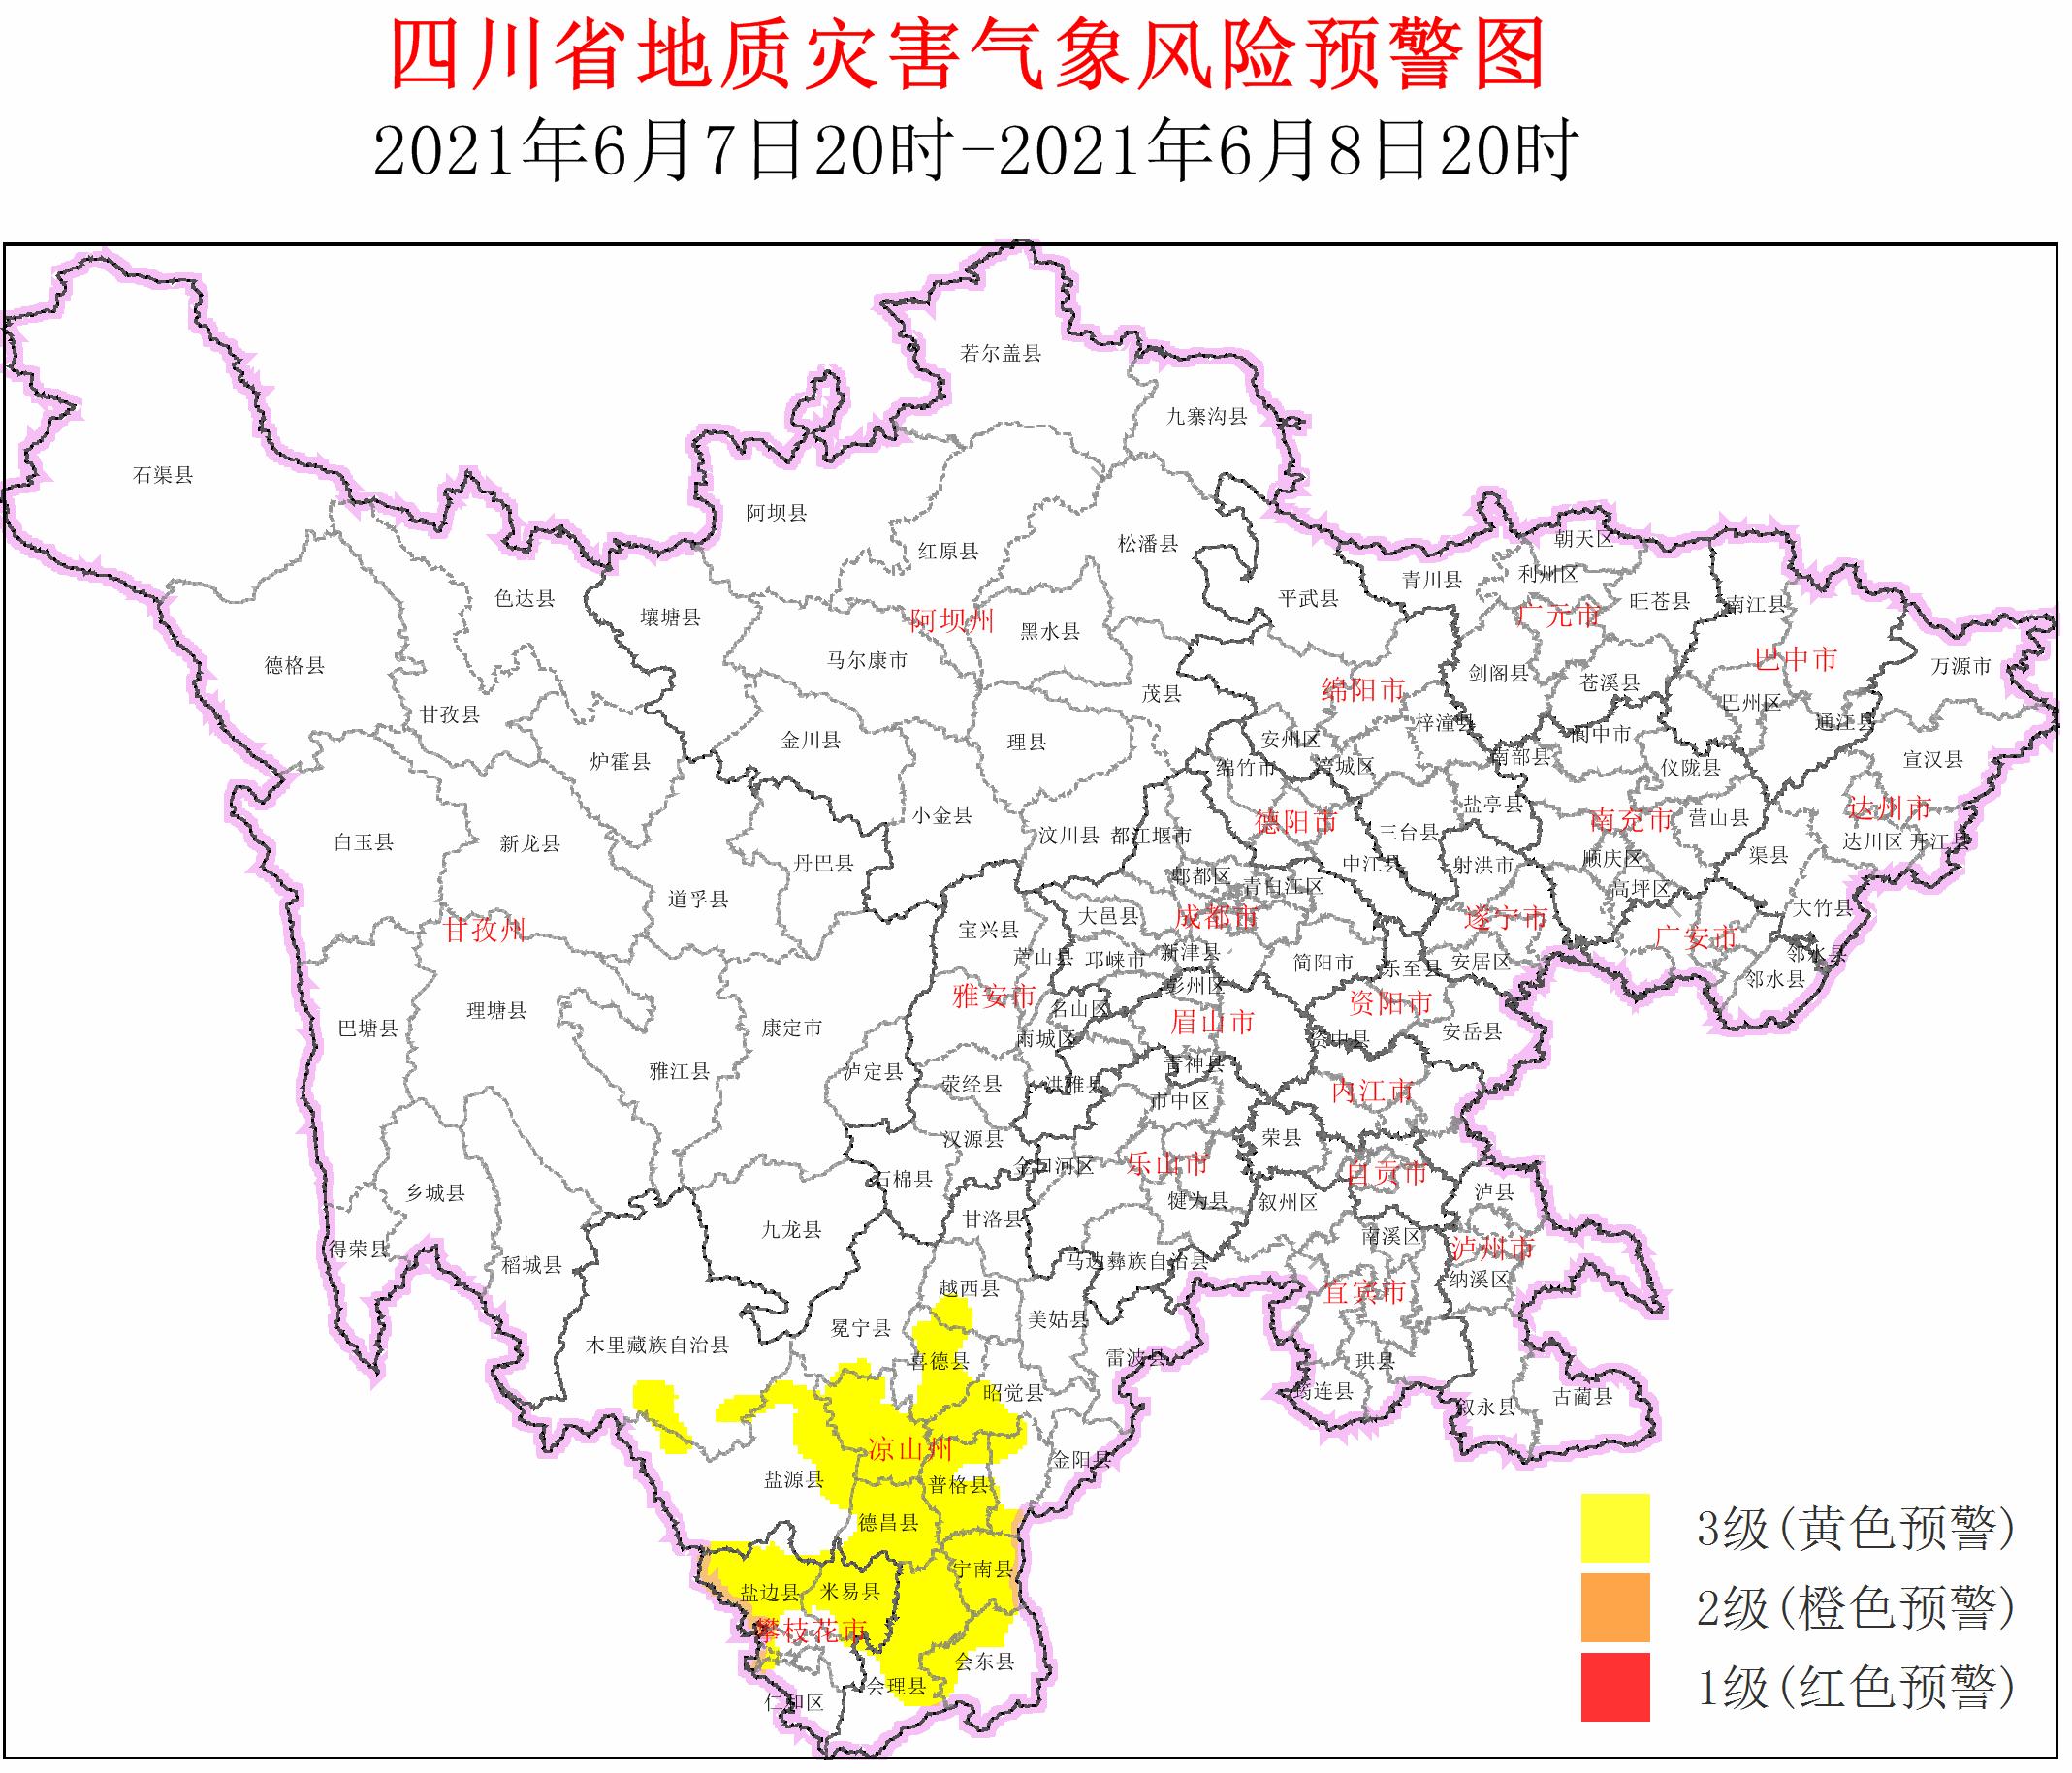 四川发布地质灾害3级黄色预警 涉及17个县市区